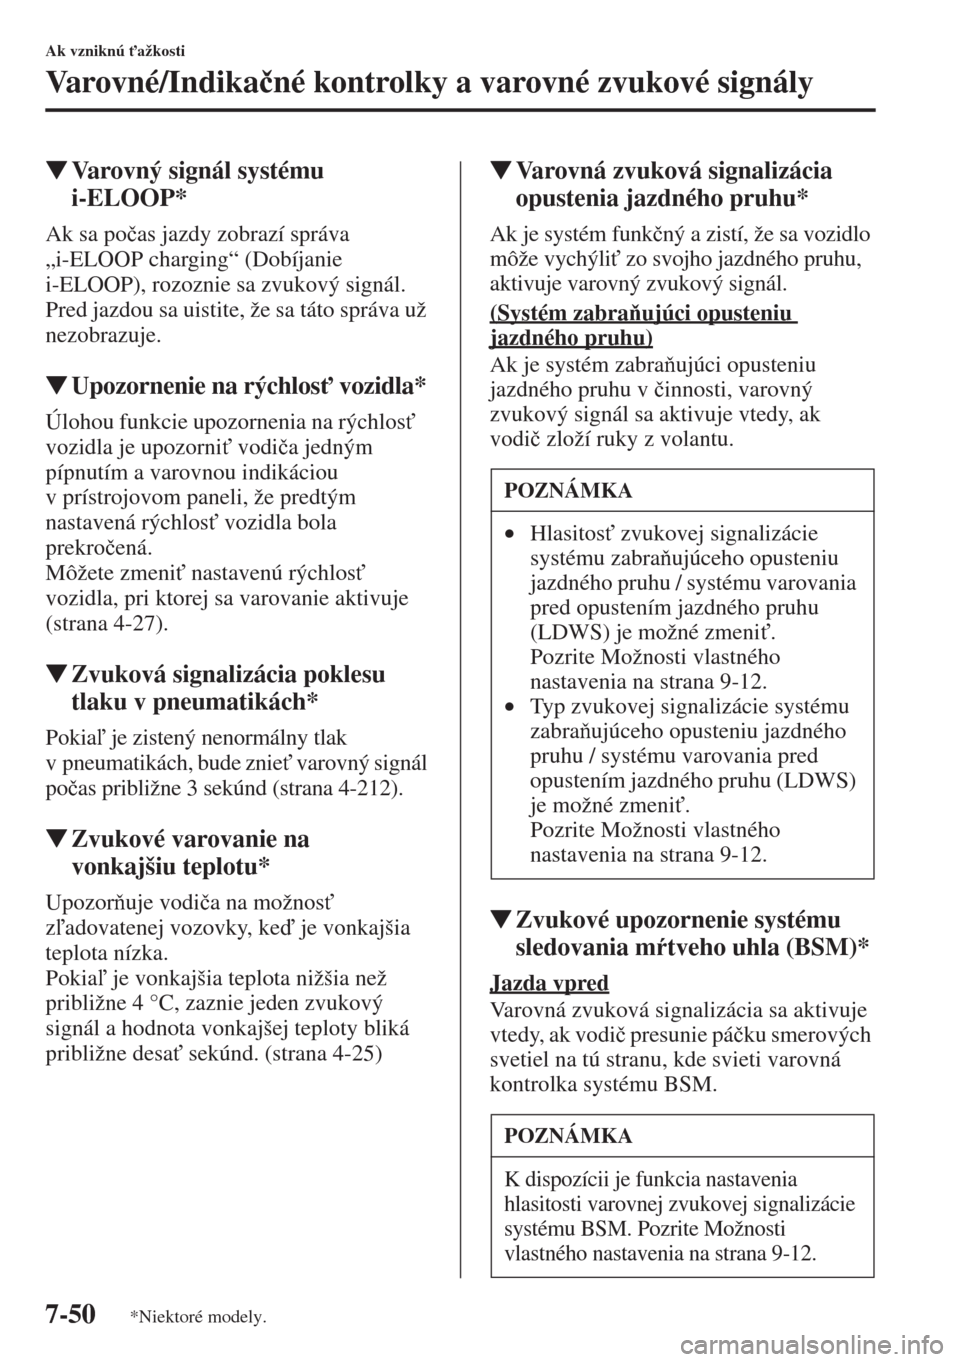 MAZDA MODEL CX-5 2015  Užívateľská príručka (in Slovak) 7-50
Ak vzniknú "ažkosti
Varovné/Indika�þné kontrolky a varovné zvukové signály
�WVarovný signál systému 
i-ELOOP*
Ak sa po�þas jazdy zobrazí správa 
„i-ELOOP charging“ (Dobíjanie 